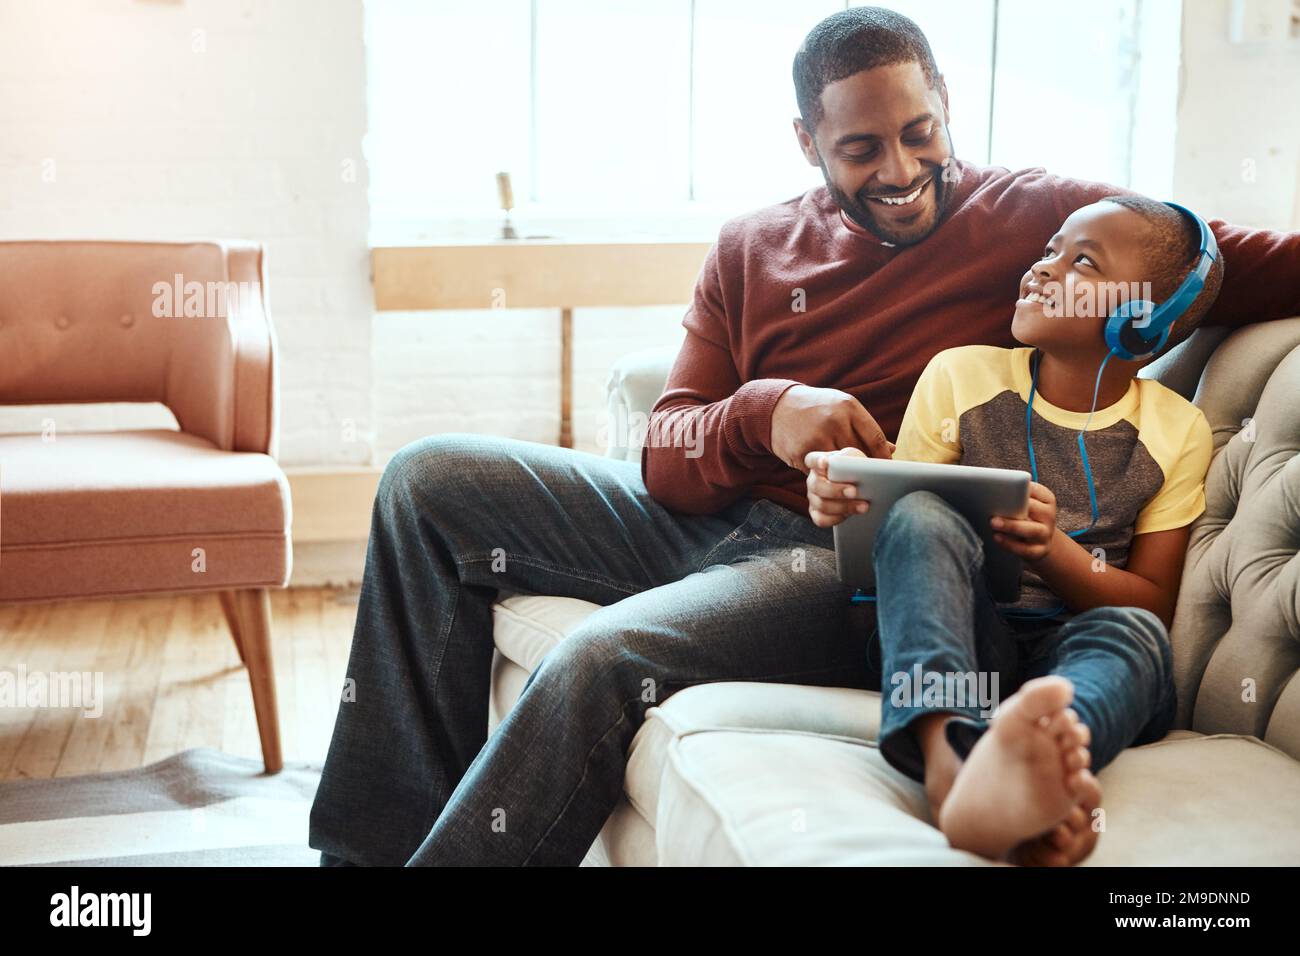 Digitales Tablet, Vater und Junge auf dem Sofa sehen sich ein lustiges, Comic- oder Meme-Video in sozialen Medien an. Fröhlicher, lächelnder und afrikanischer Mann, der einen Film mit streamt Stockfoto